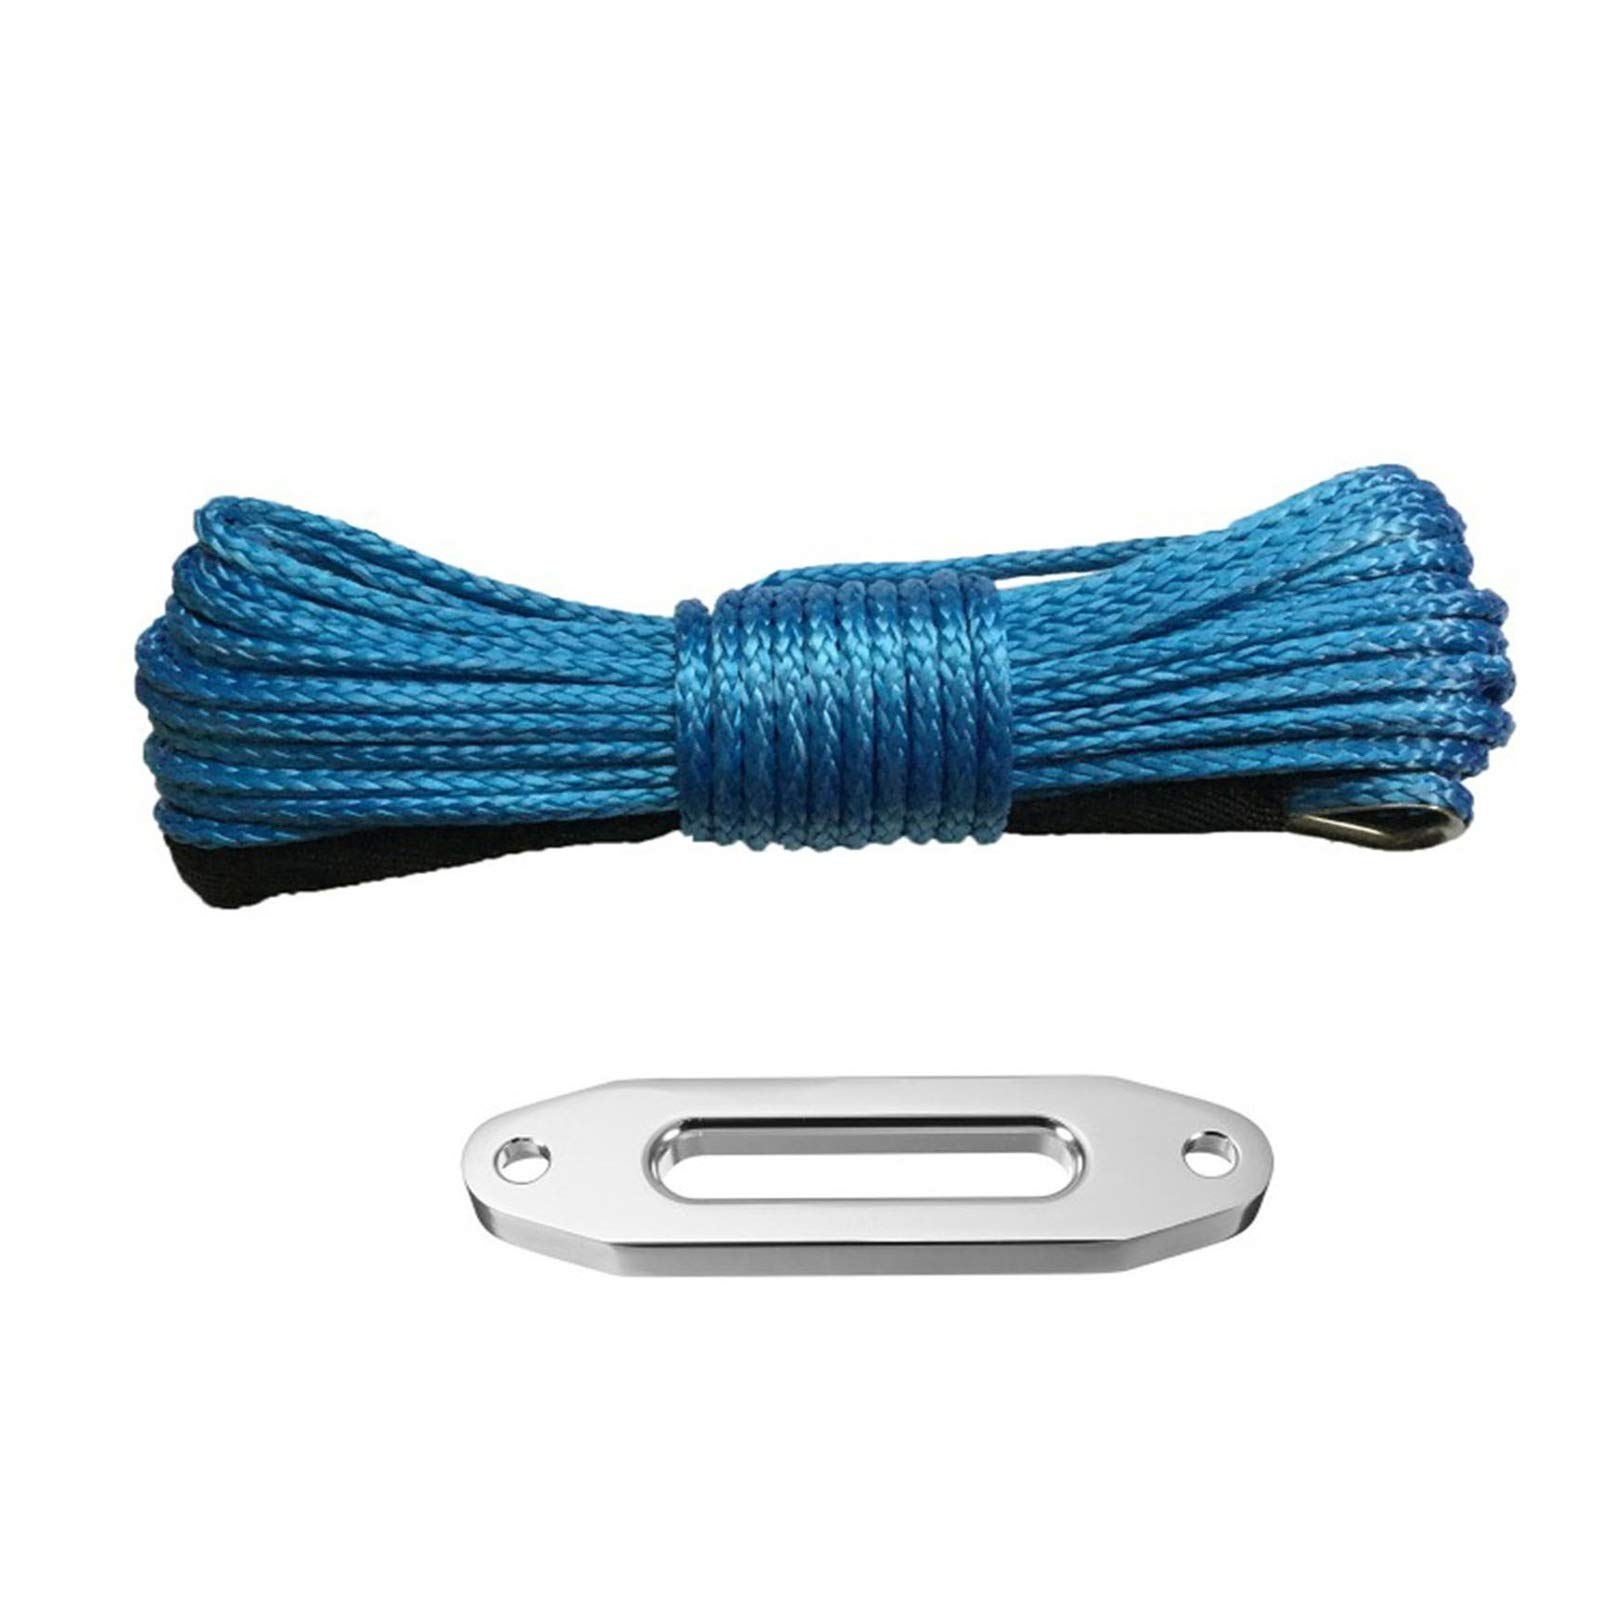 Windenkabel Synthetisches Windenseil/Kabel 6mm * 12m 4000lbs Fairlead atv UTV Offroad Recovery Großartiges Aussehen und Kompatibilität(Blue) von MERHOVO